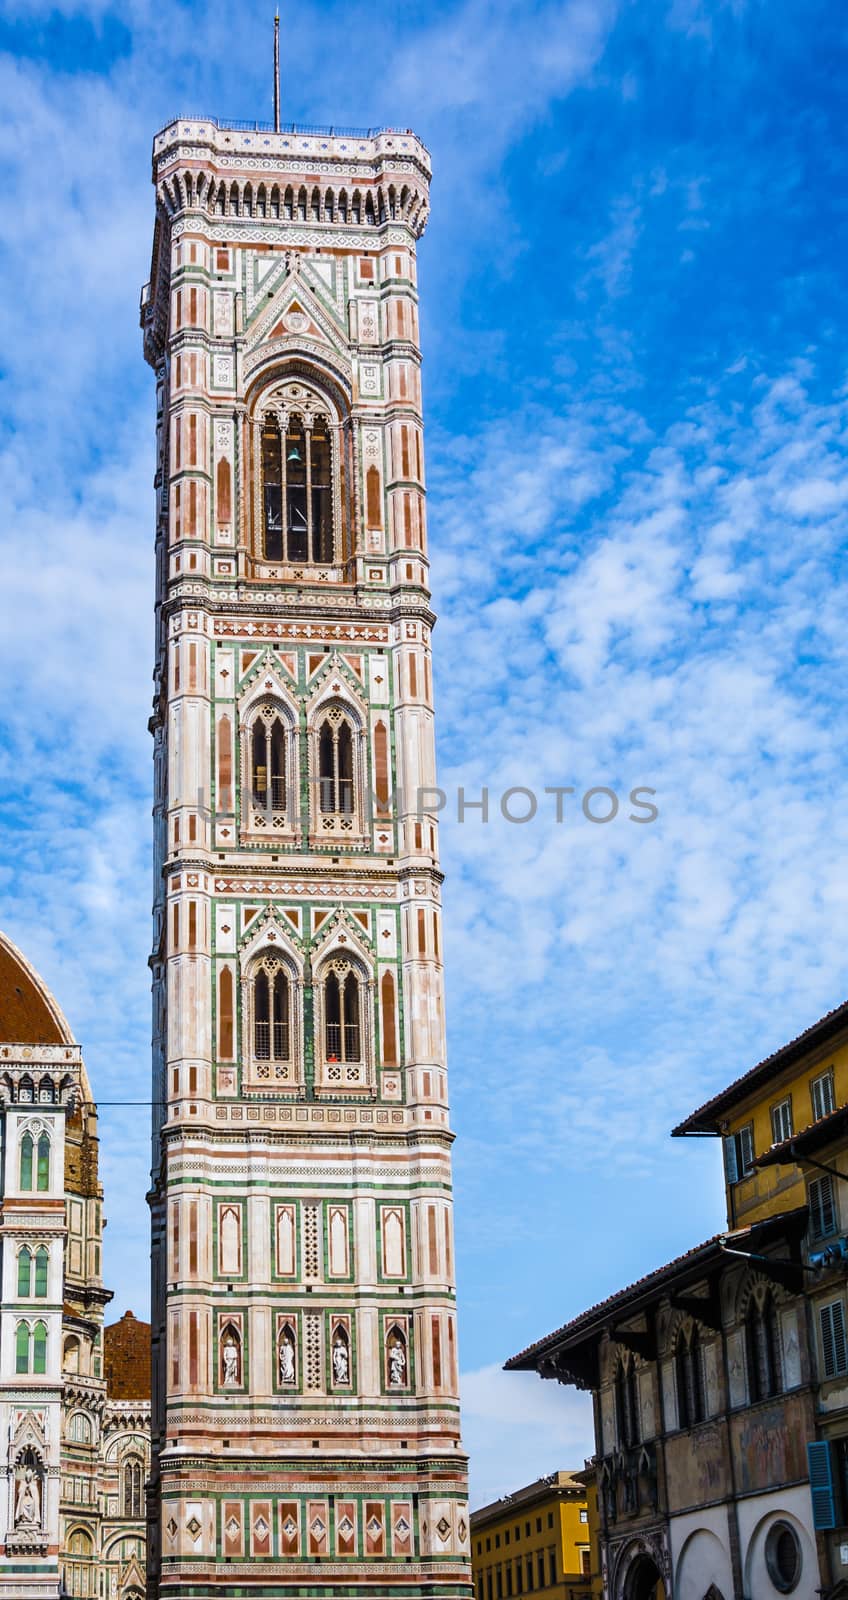 Giotto Campanile in Florence by rarrarorro